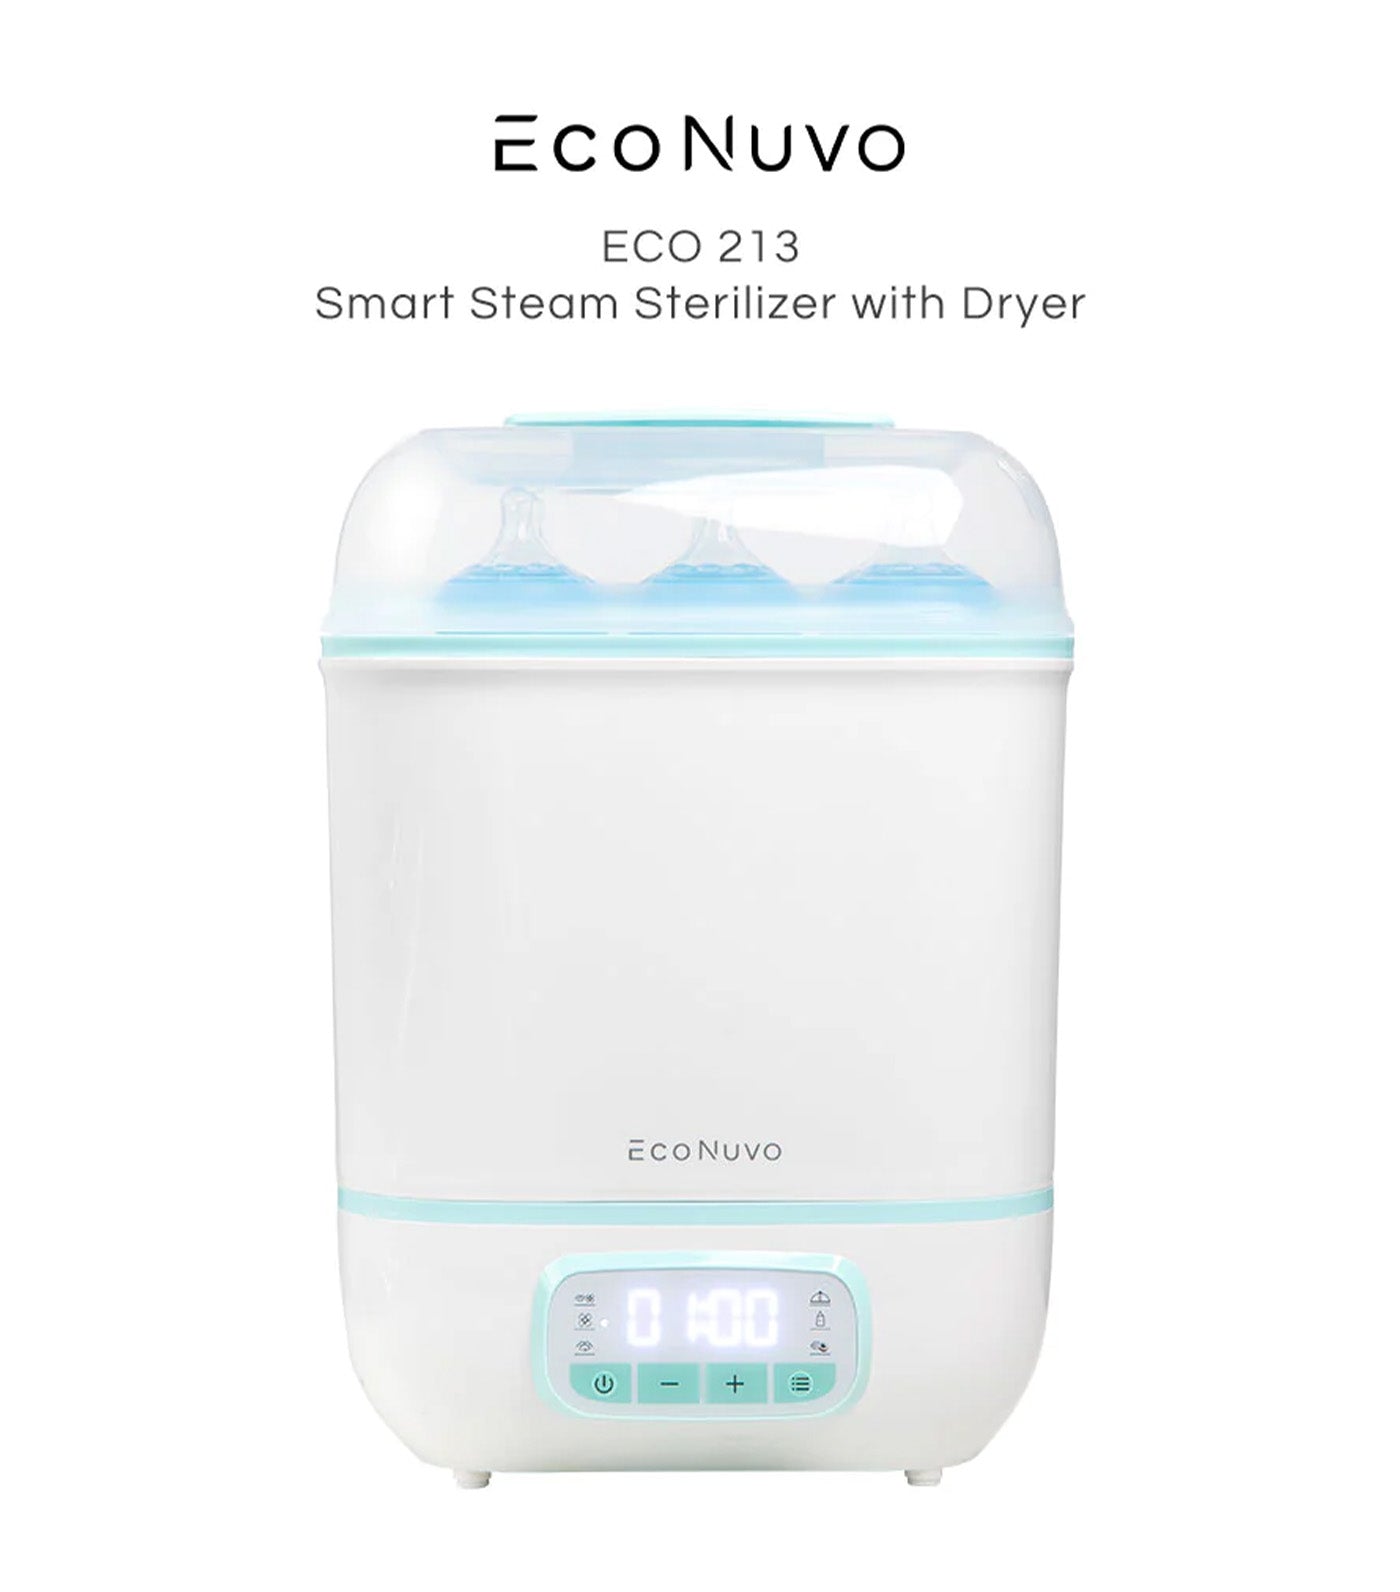 Smart Steam Sterilizer with Dryer